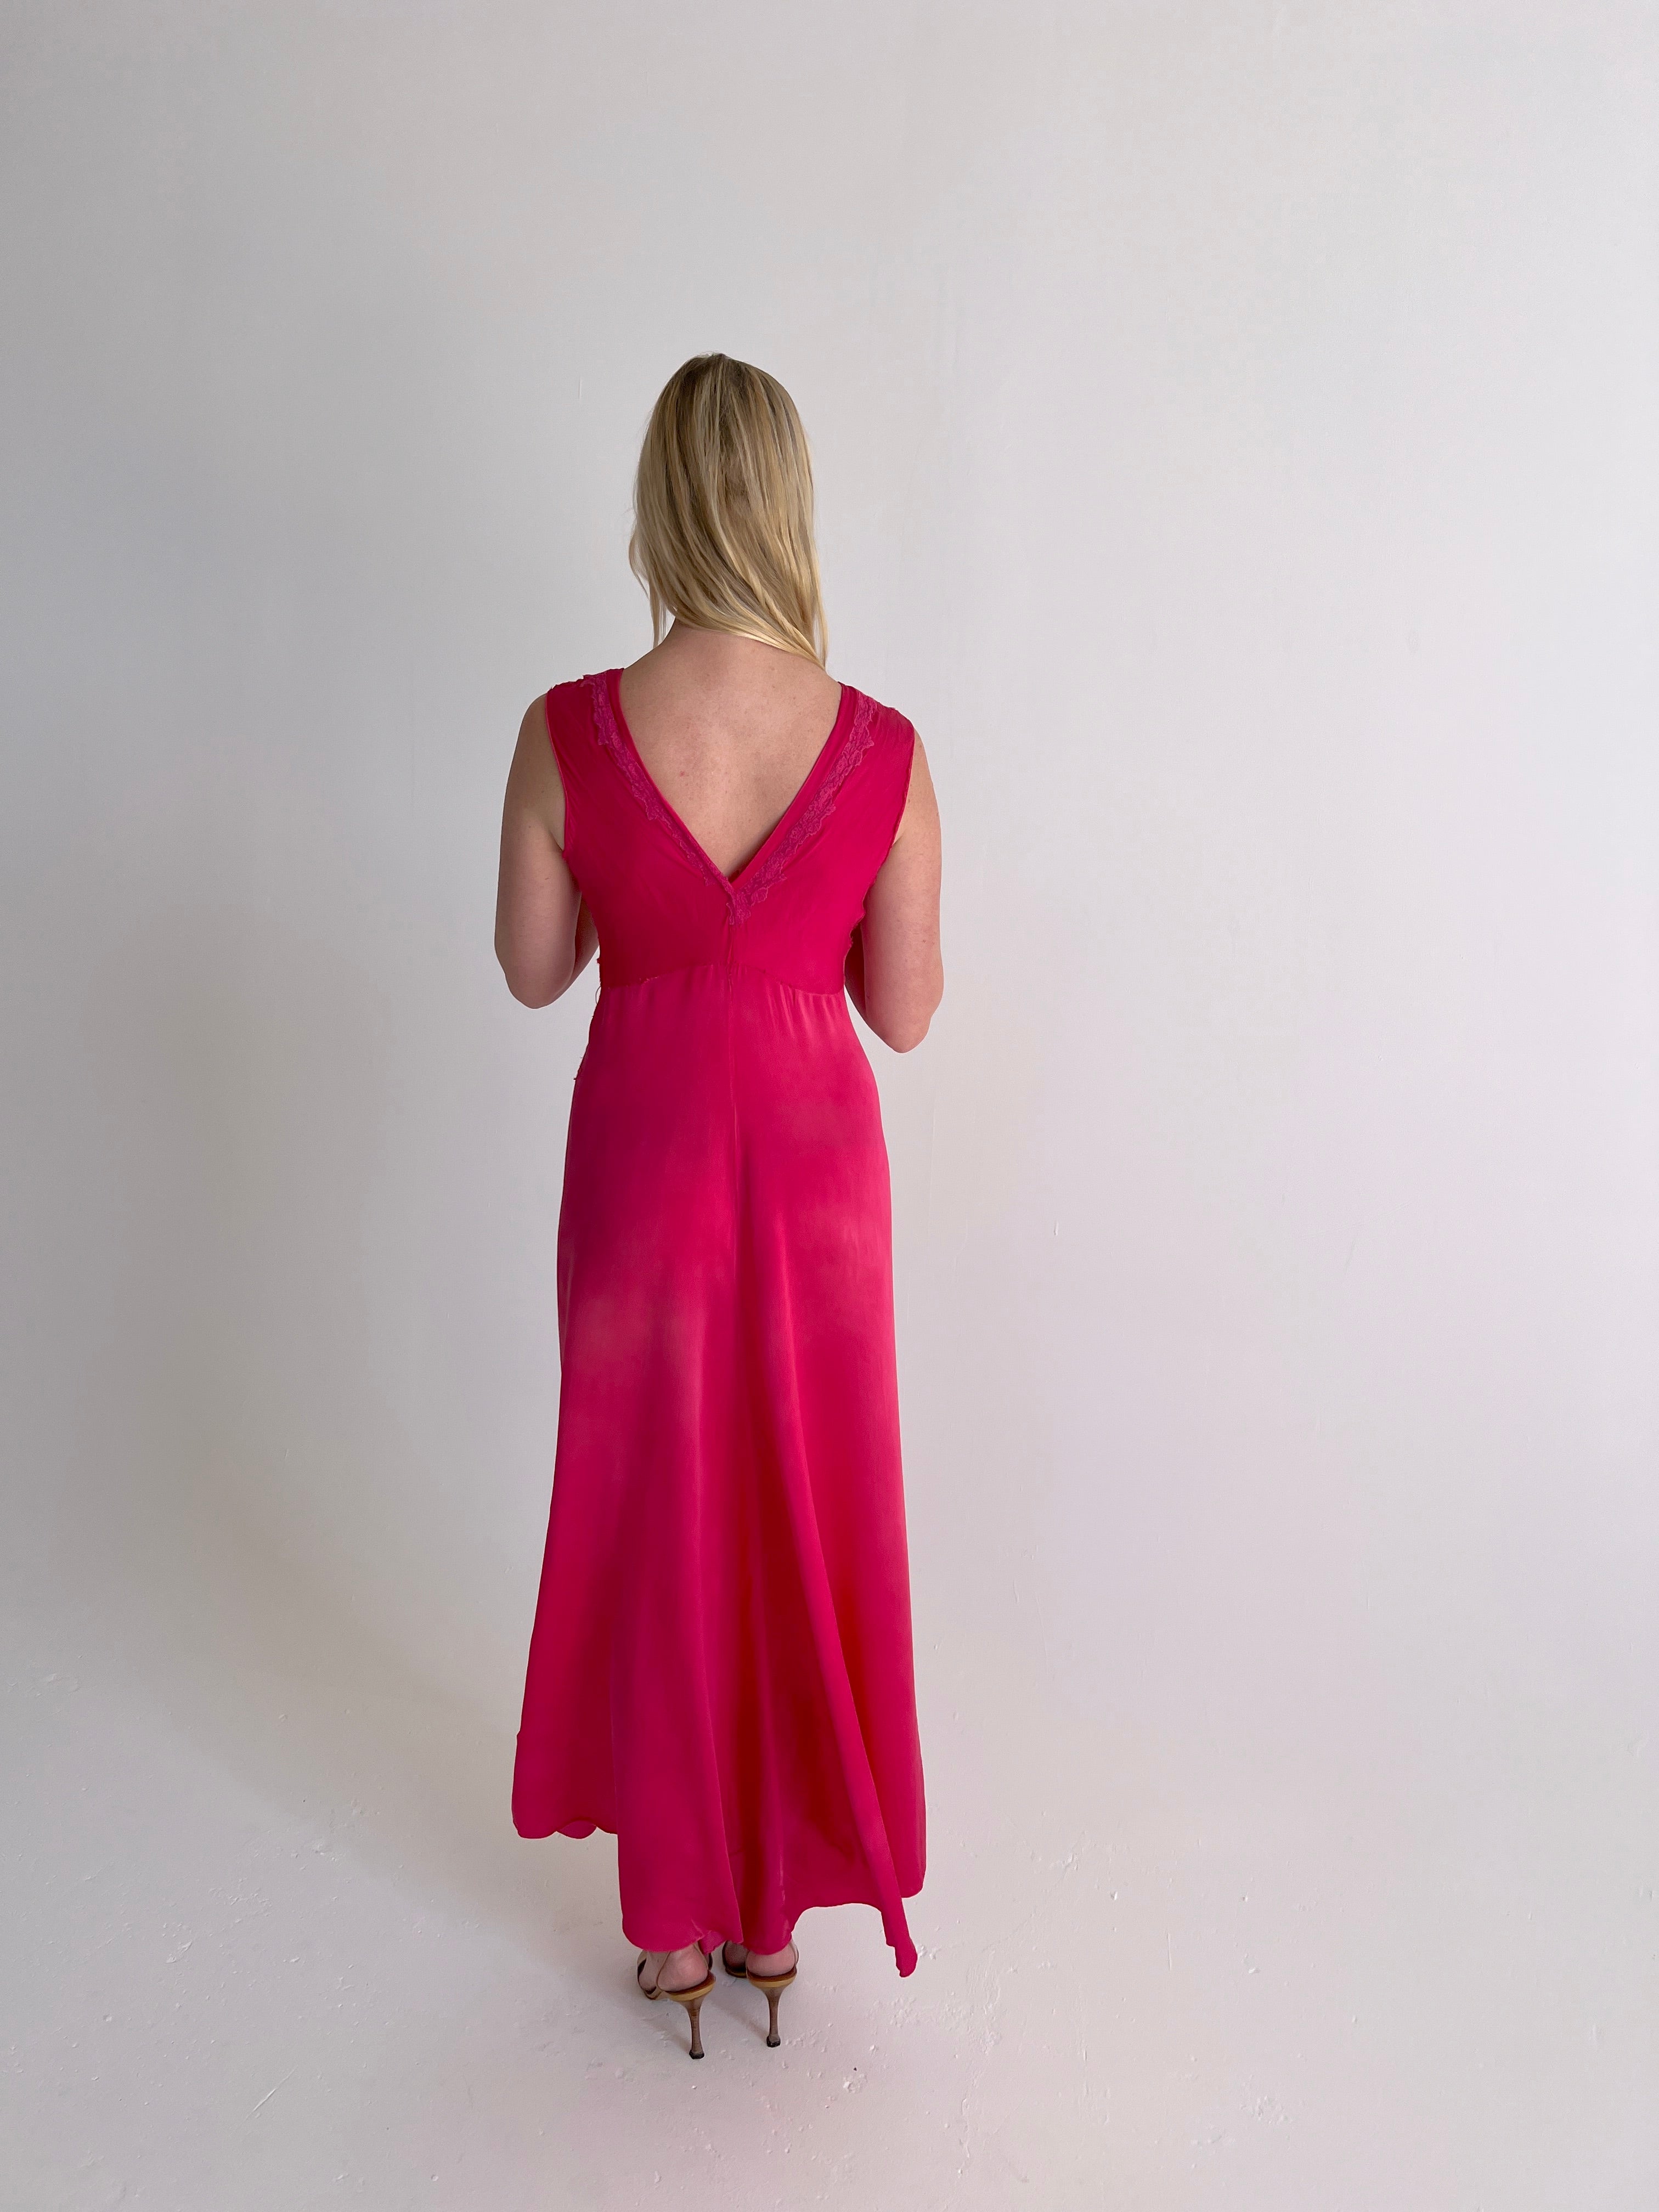 Hand Dyed Hot Pink Silk Dress